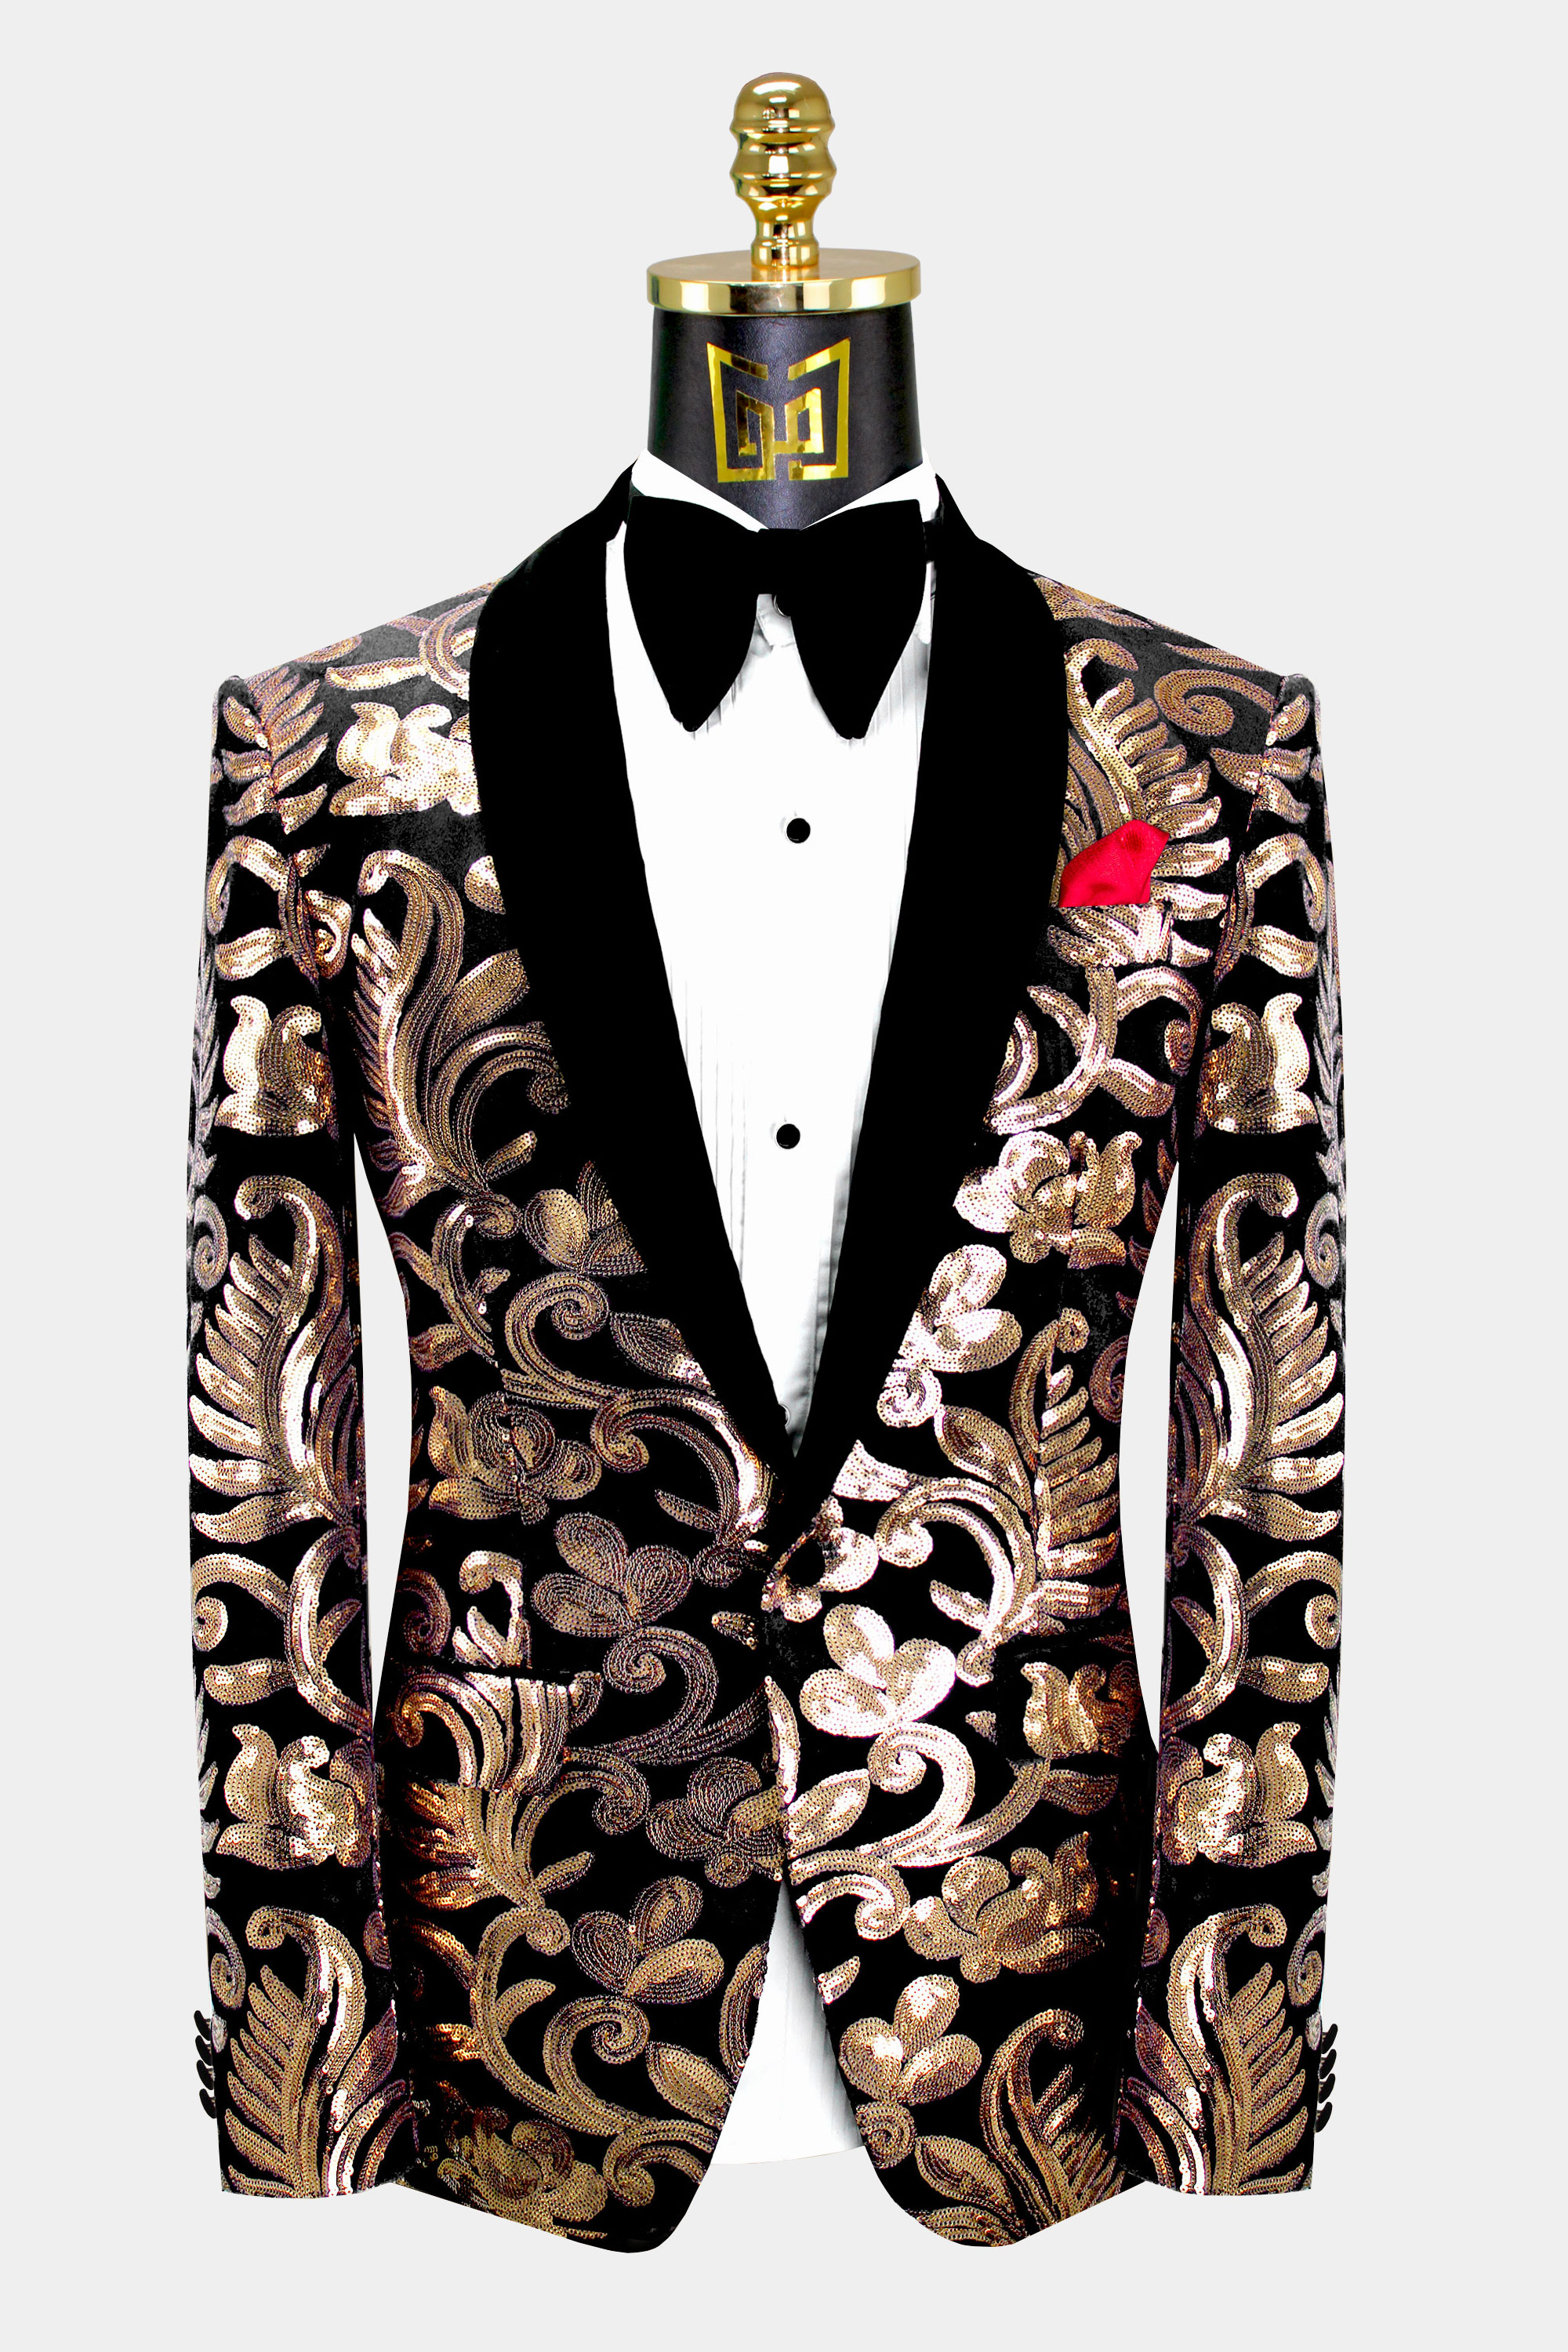 Black & Gold Velvet Tuxedo Jacket with Sequins